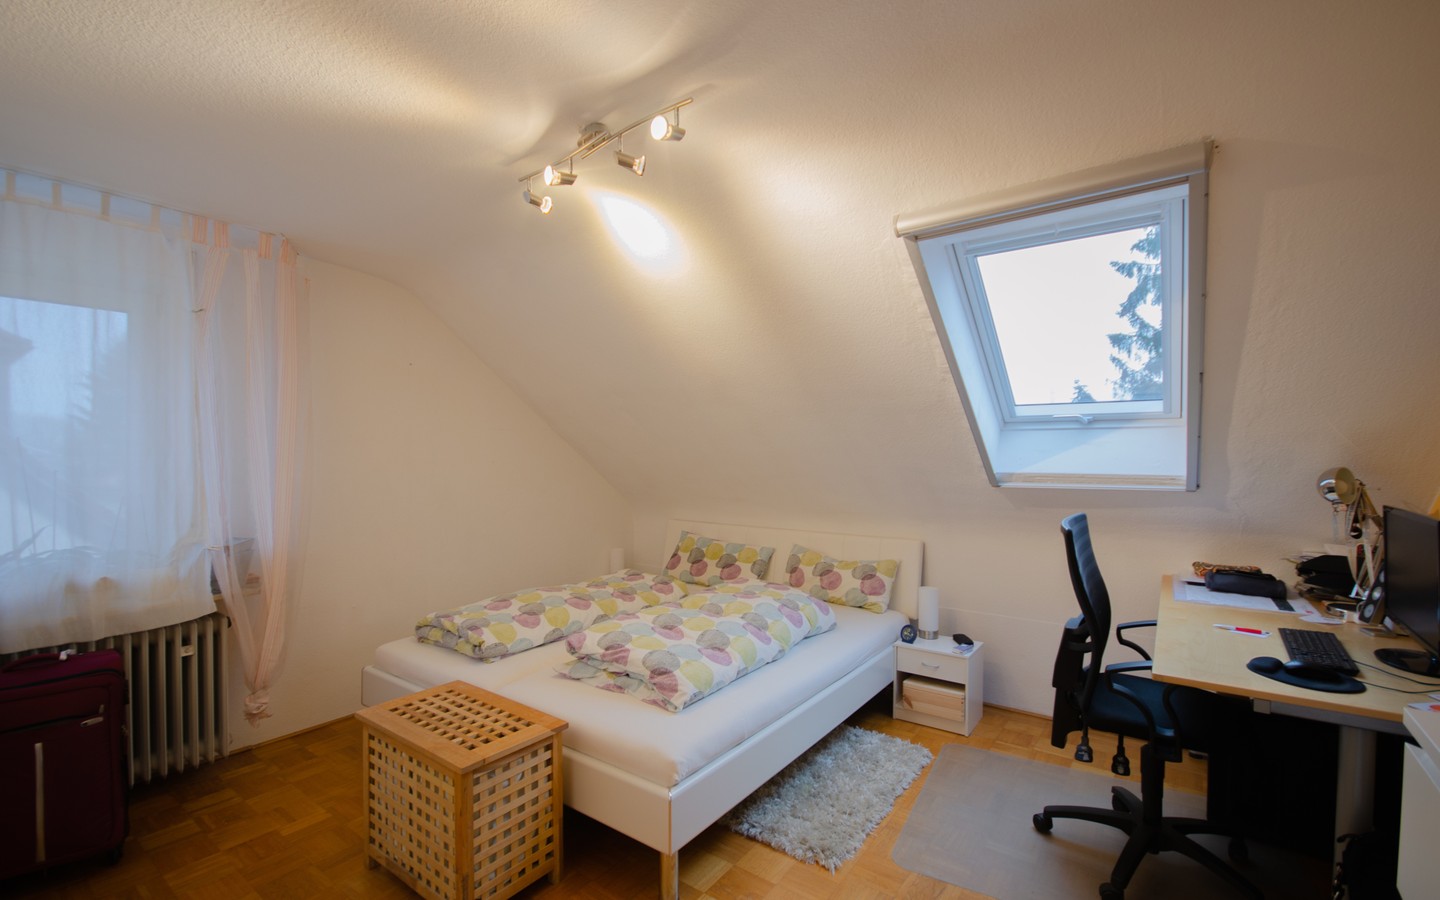 Schlafzimmer DG links  - HD-Neuenheim: Top-Investment in bevorzugter Lage